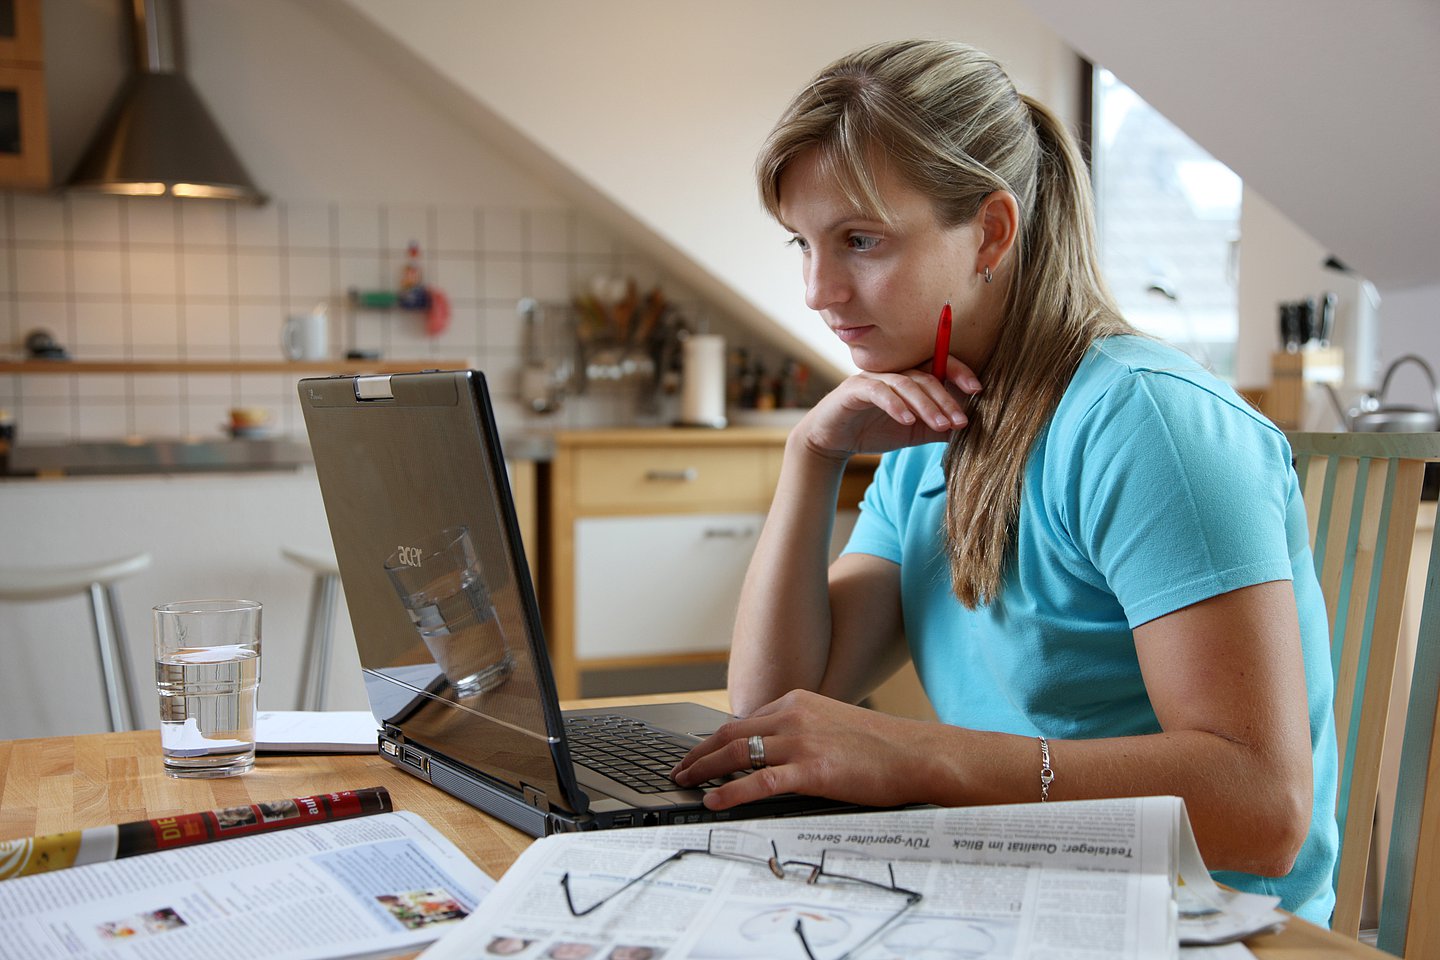 Foto: Eine Frau arbeitet zu Hause. Sie sitzt am Küchentisch mit ihrem Computer.